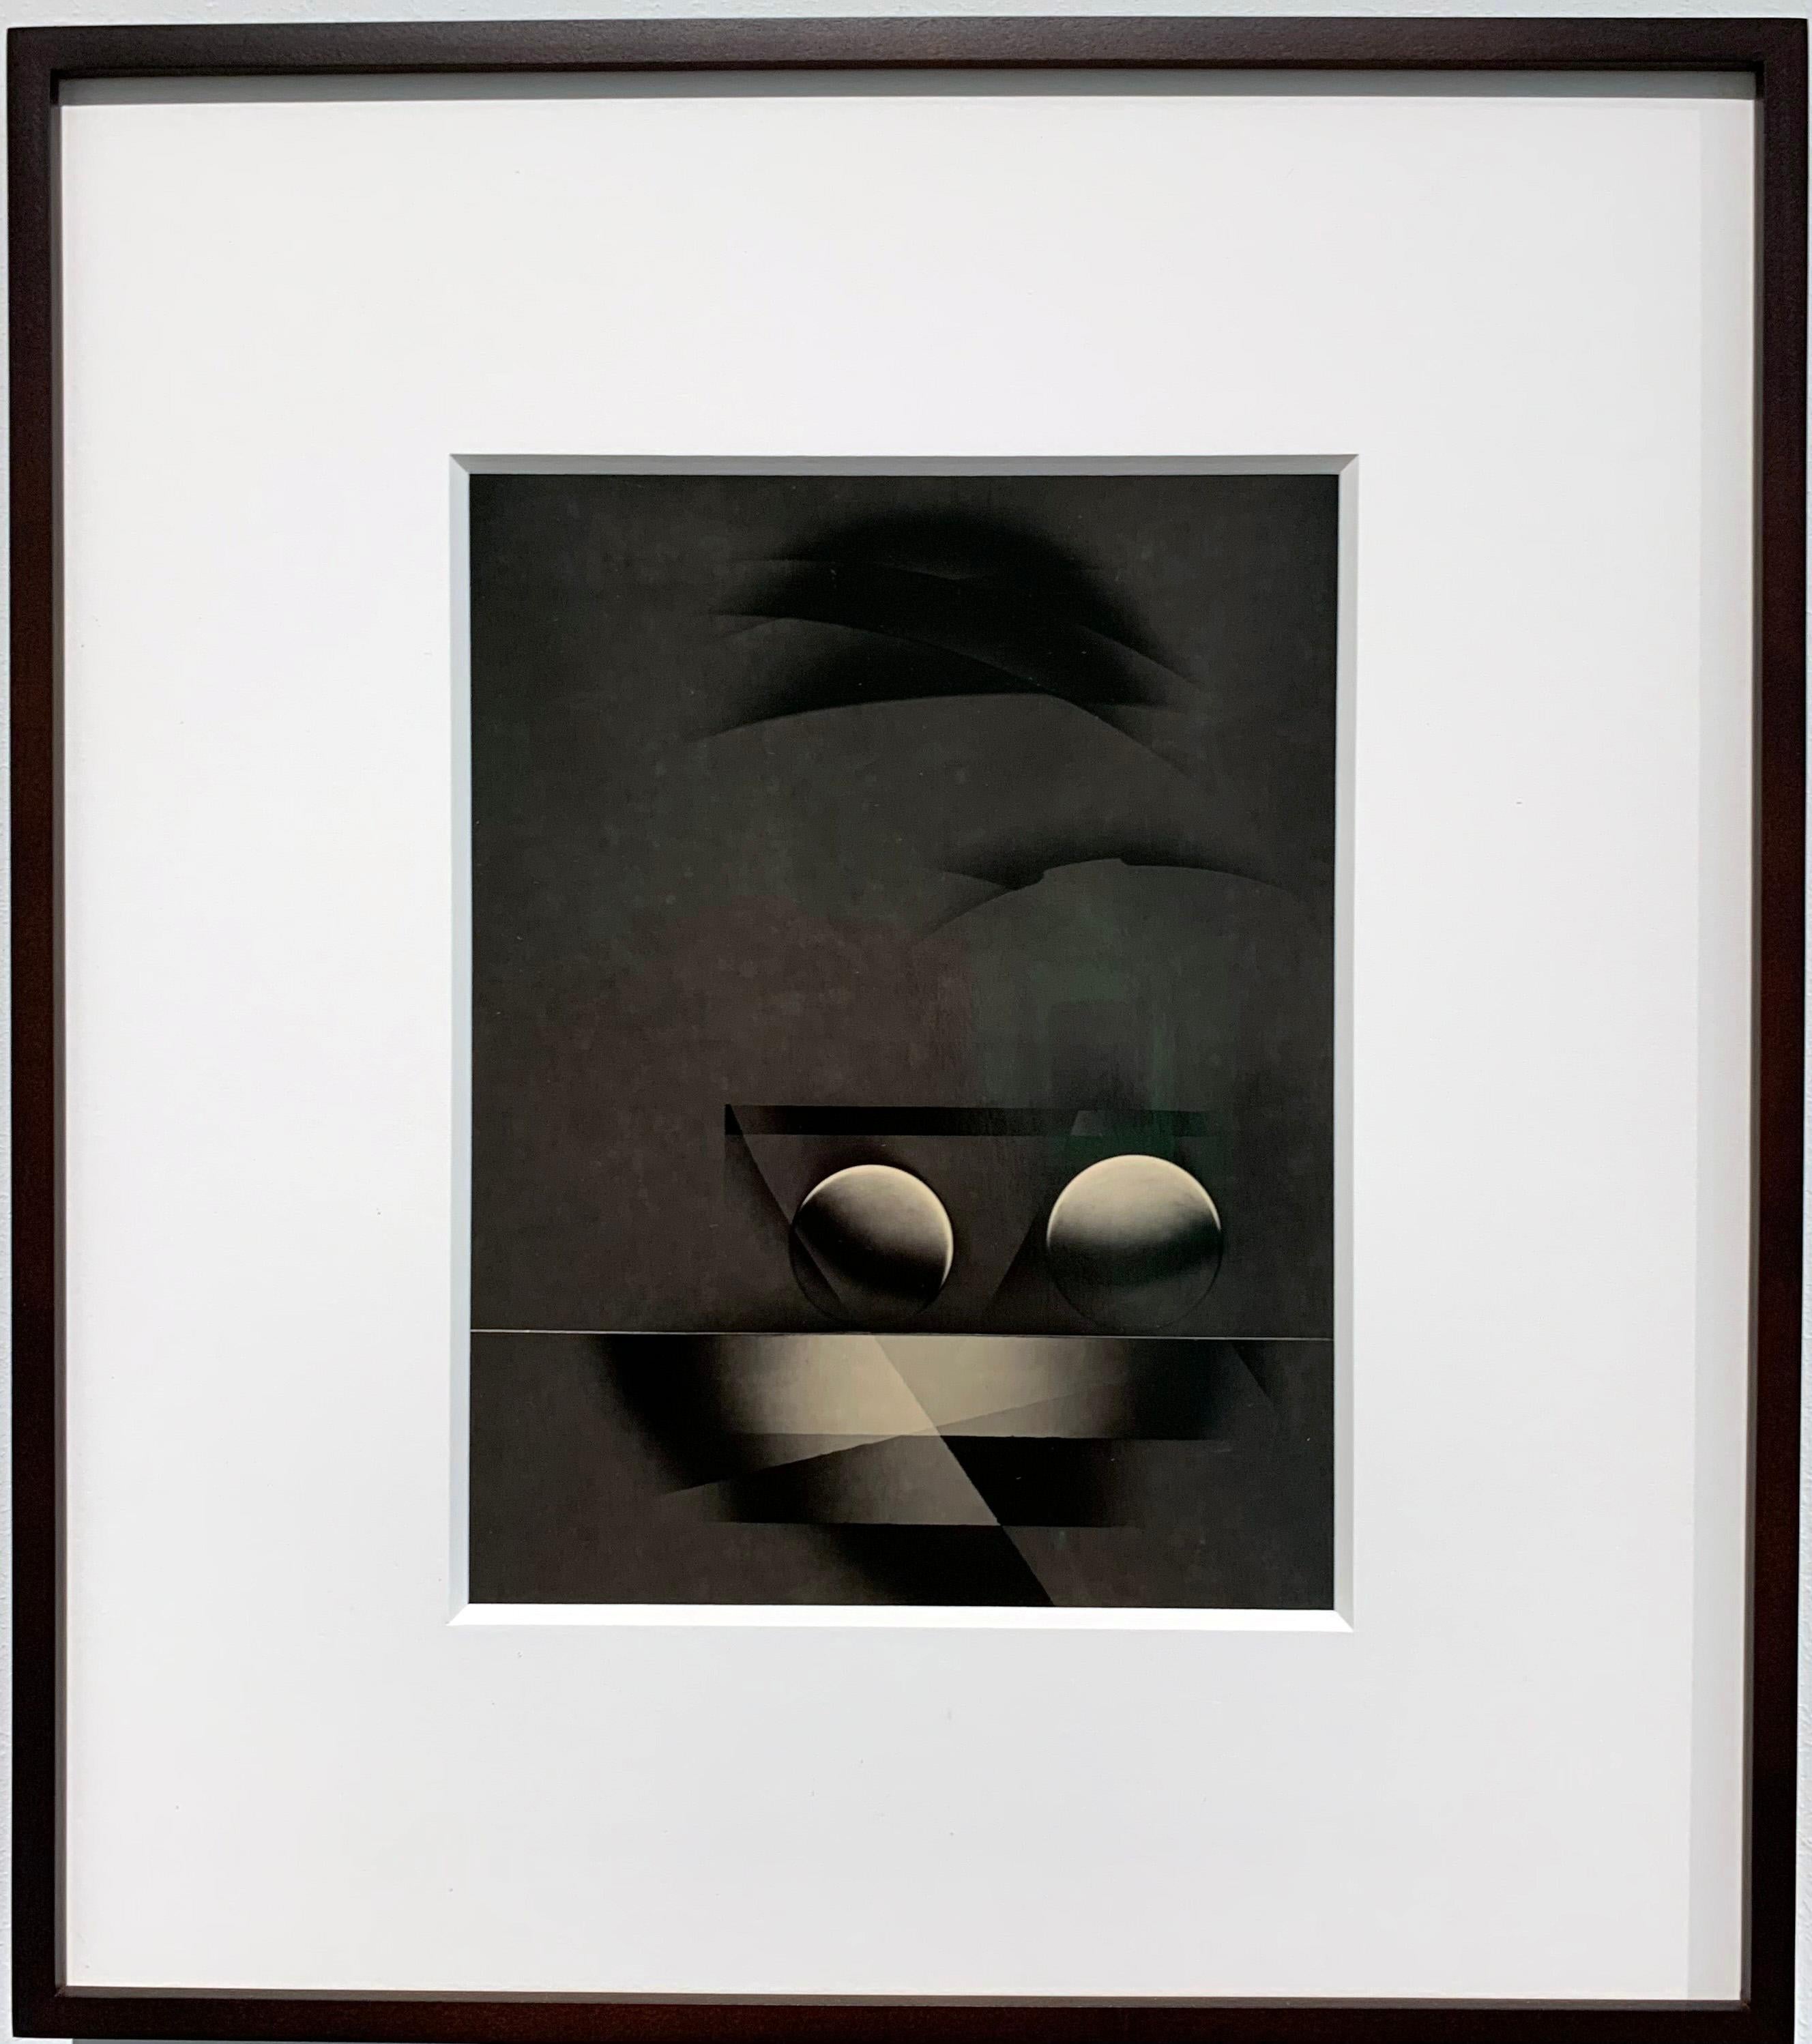 ATO>MIC #15, Unique Silver Luminogram Print, Warm toneed black and white abstract (abstrait noir et blanc aux tons chauds) - Photograph de Michael G Jackson